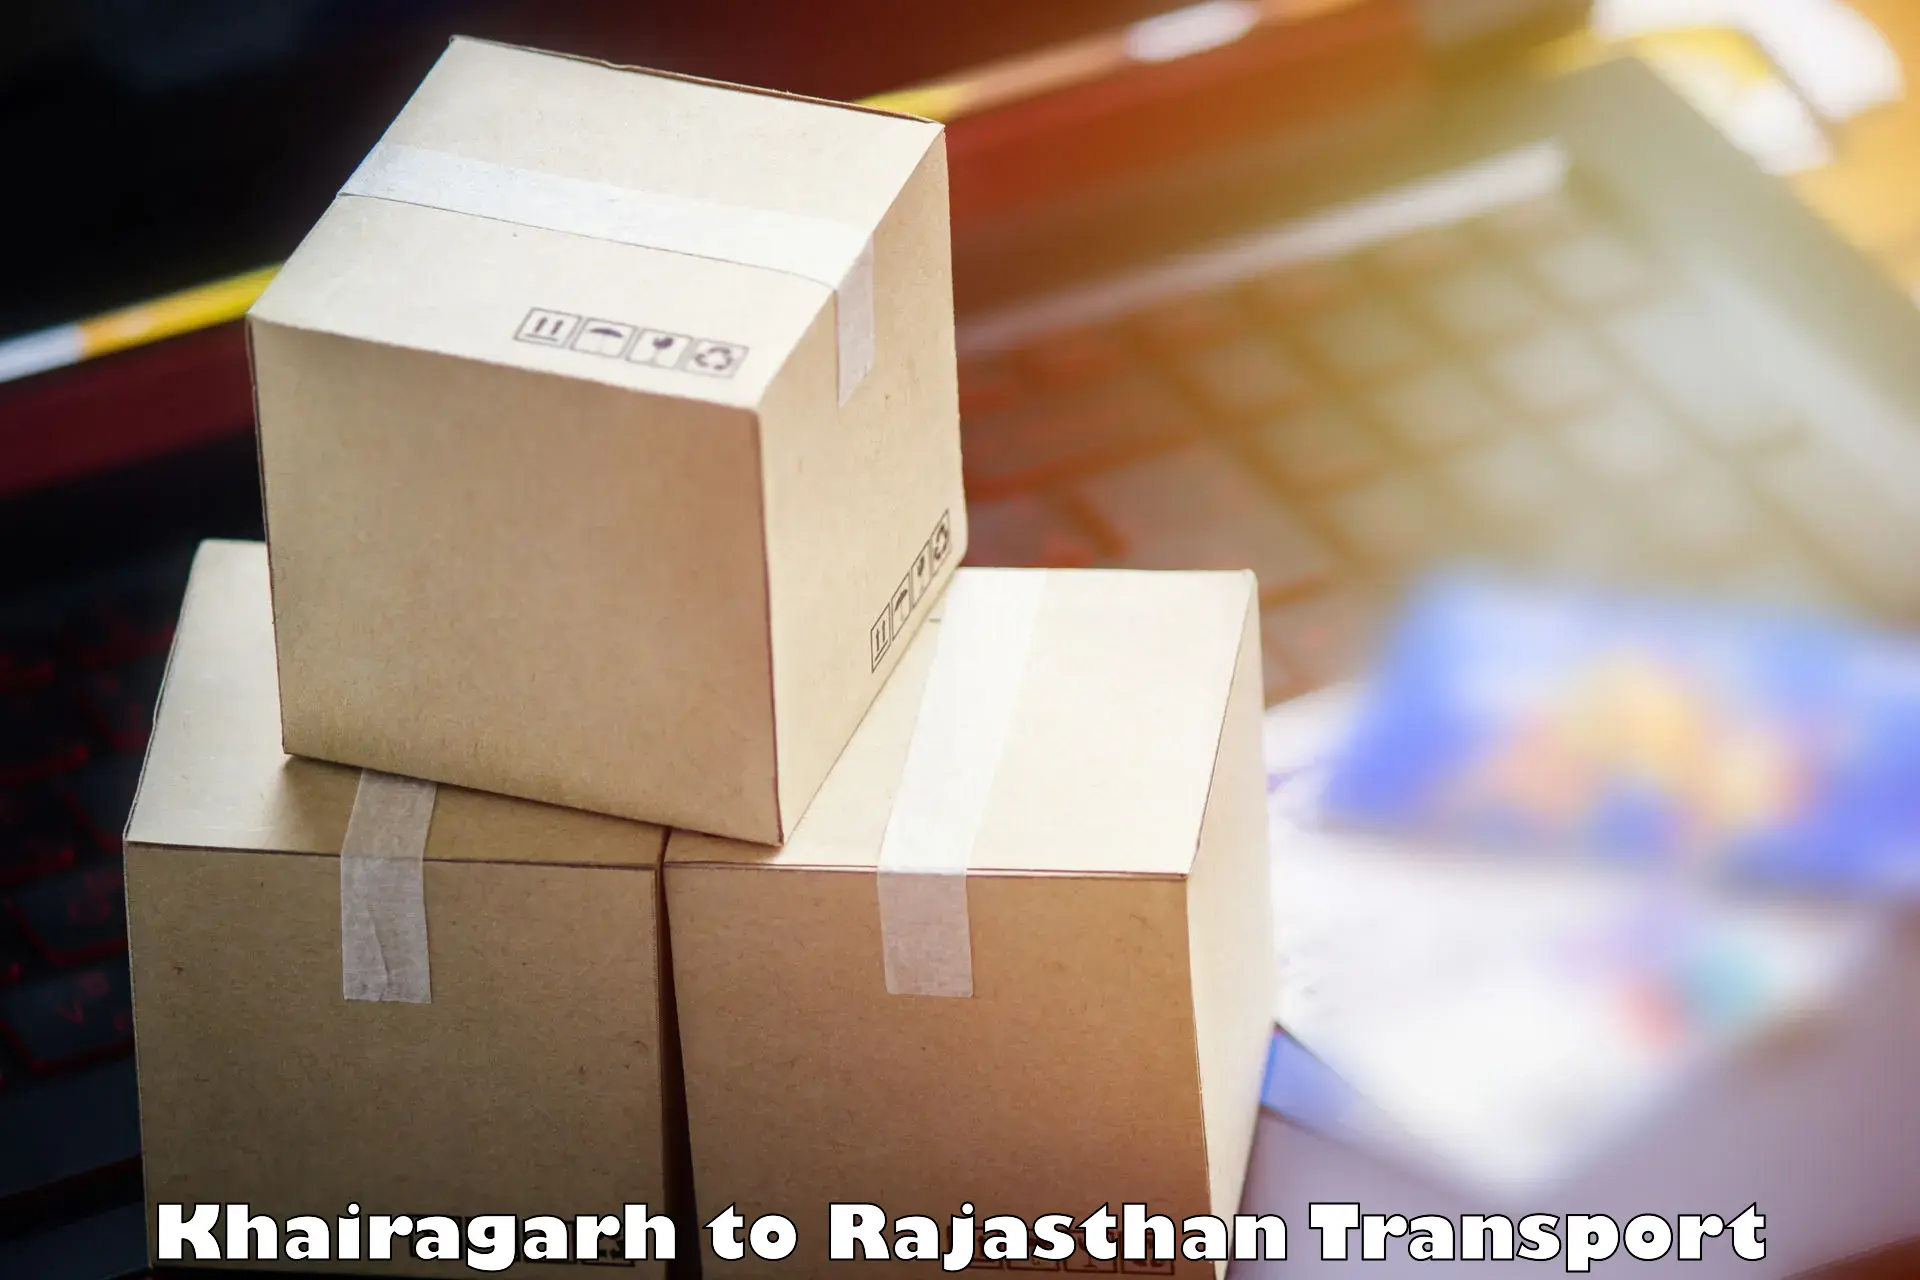 Luggage transport services in Khairagarh to Jaisalmer